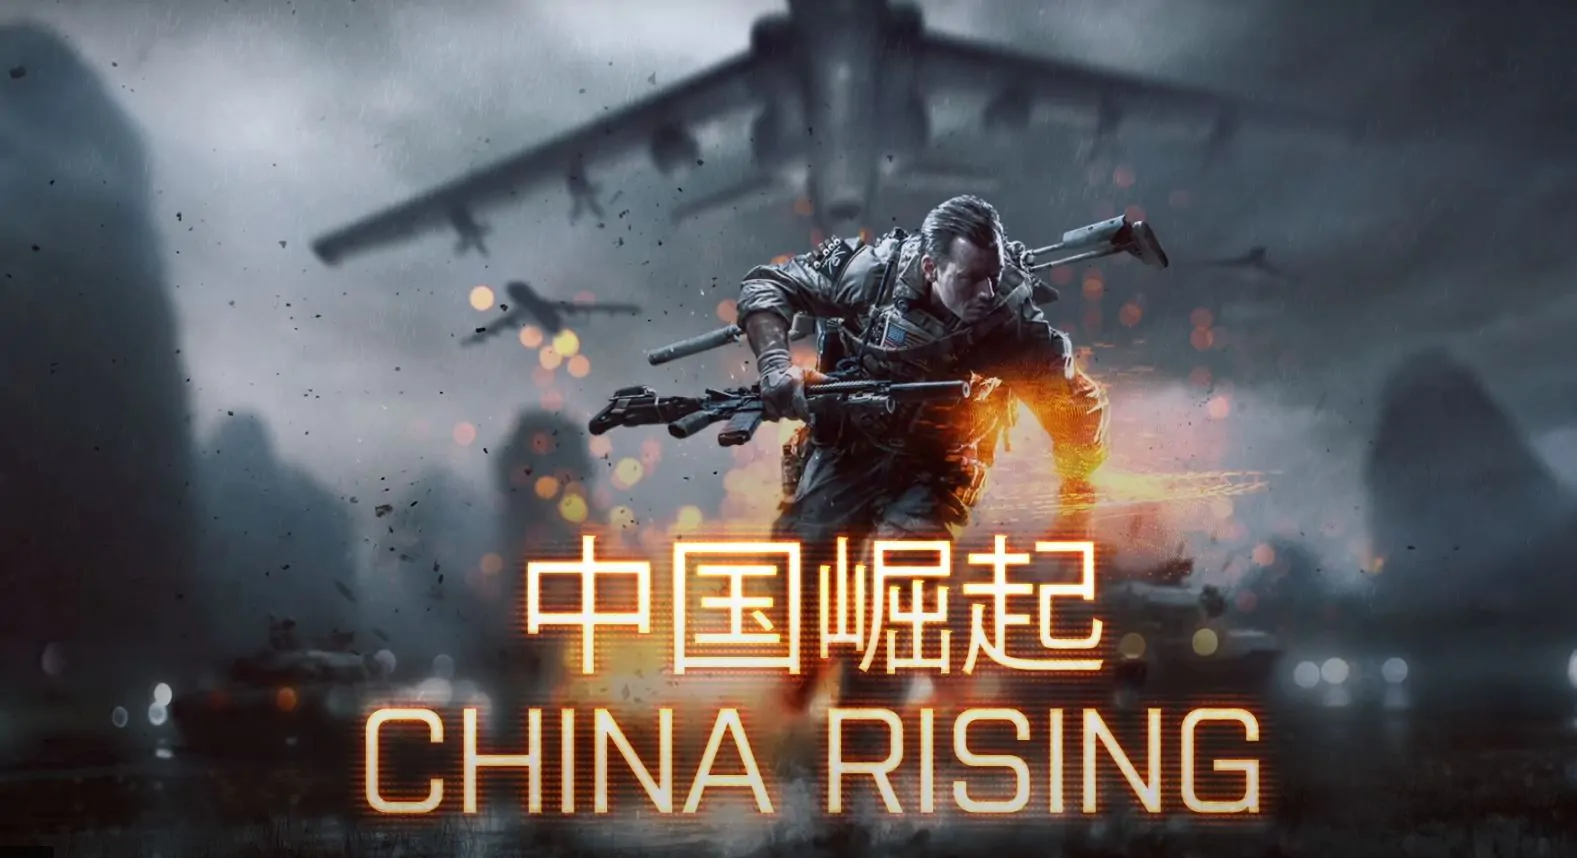 Expansão China Rising de Battlefield 4 está gratuito